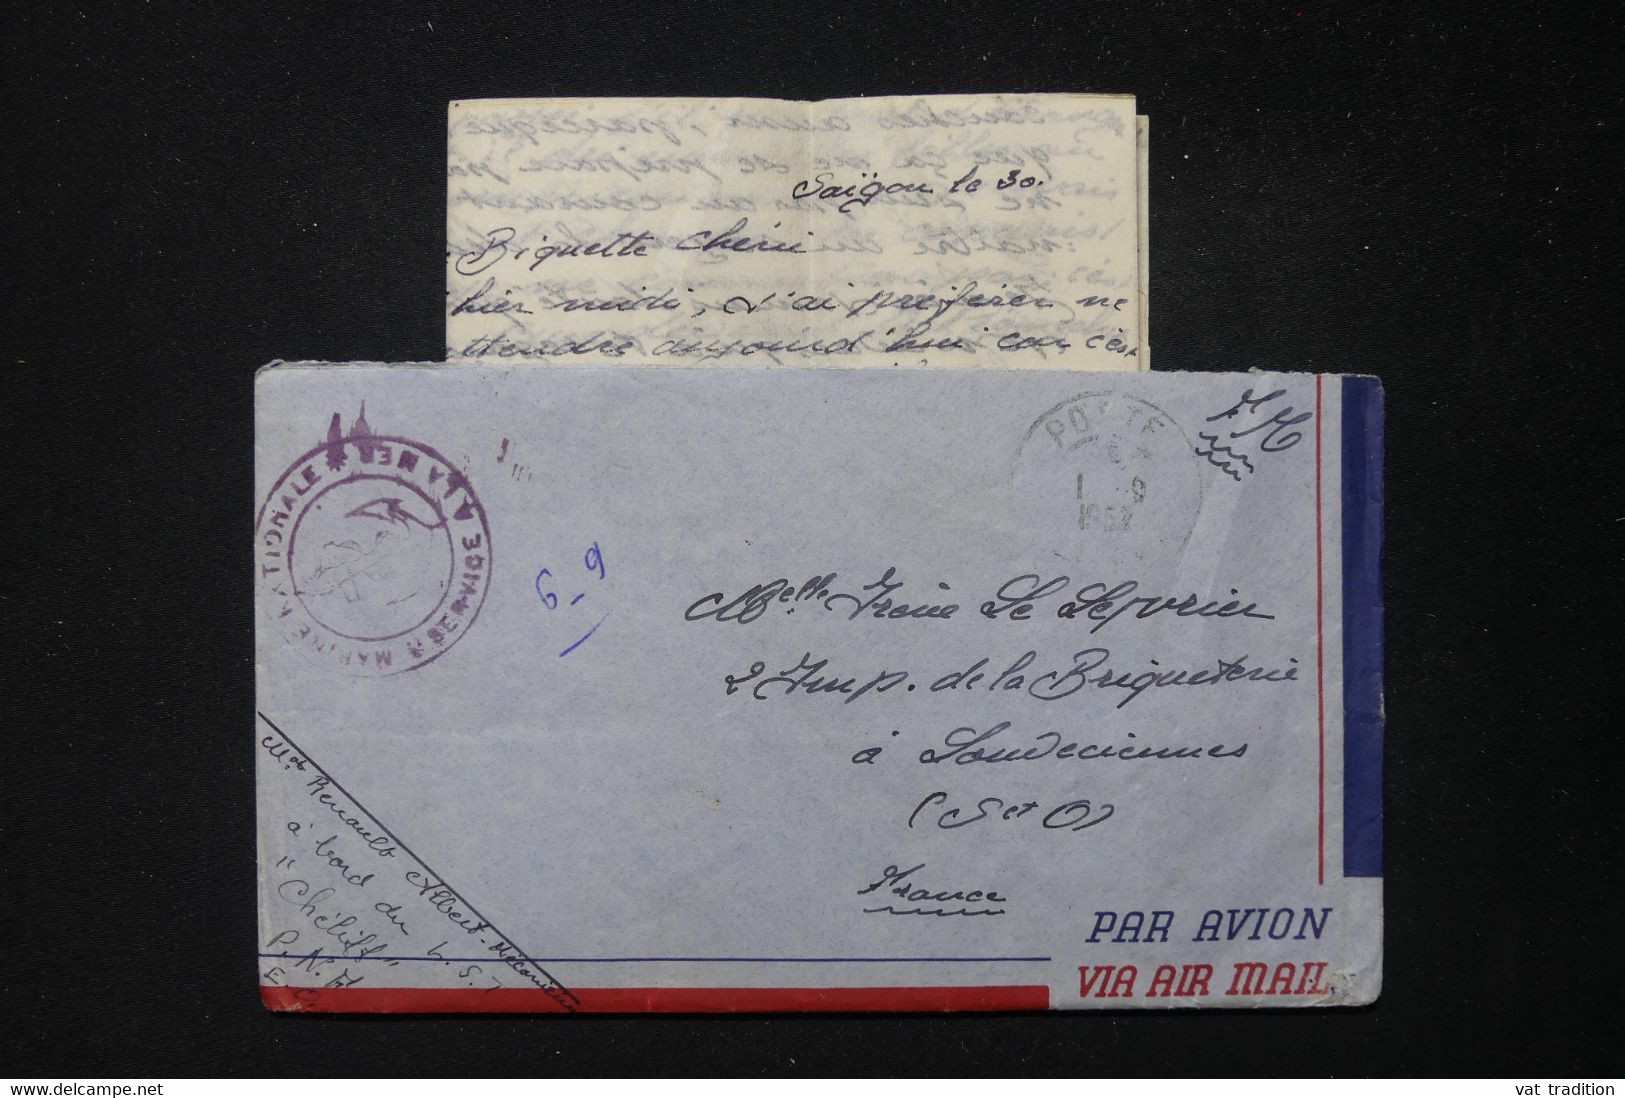 FRANCE / INDOCHINE - Enveloppe Avec Contenu D'un Marin En Indochine En 1952 Pour La France - L 83853 - War Of Indo-China / Vietnam